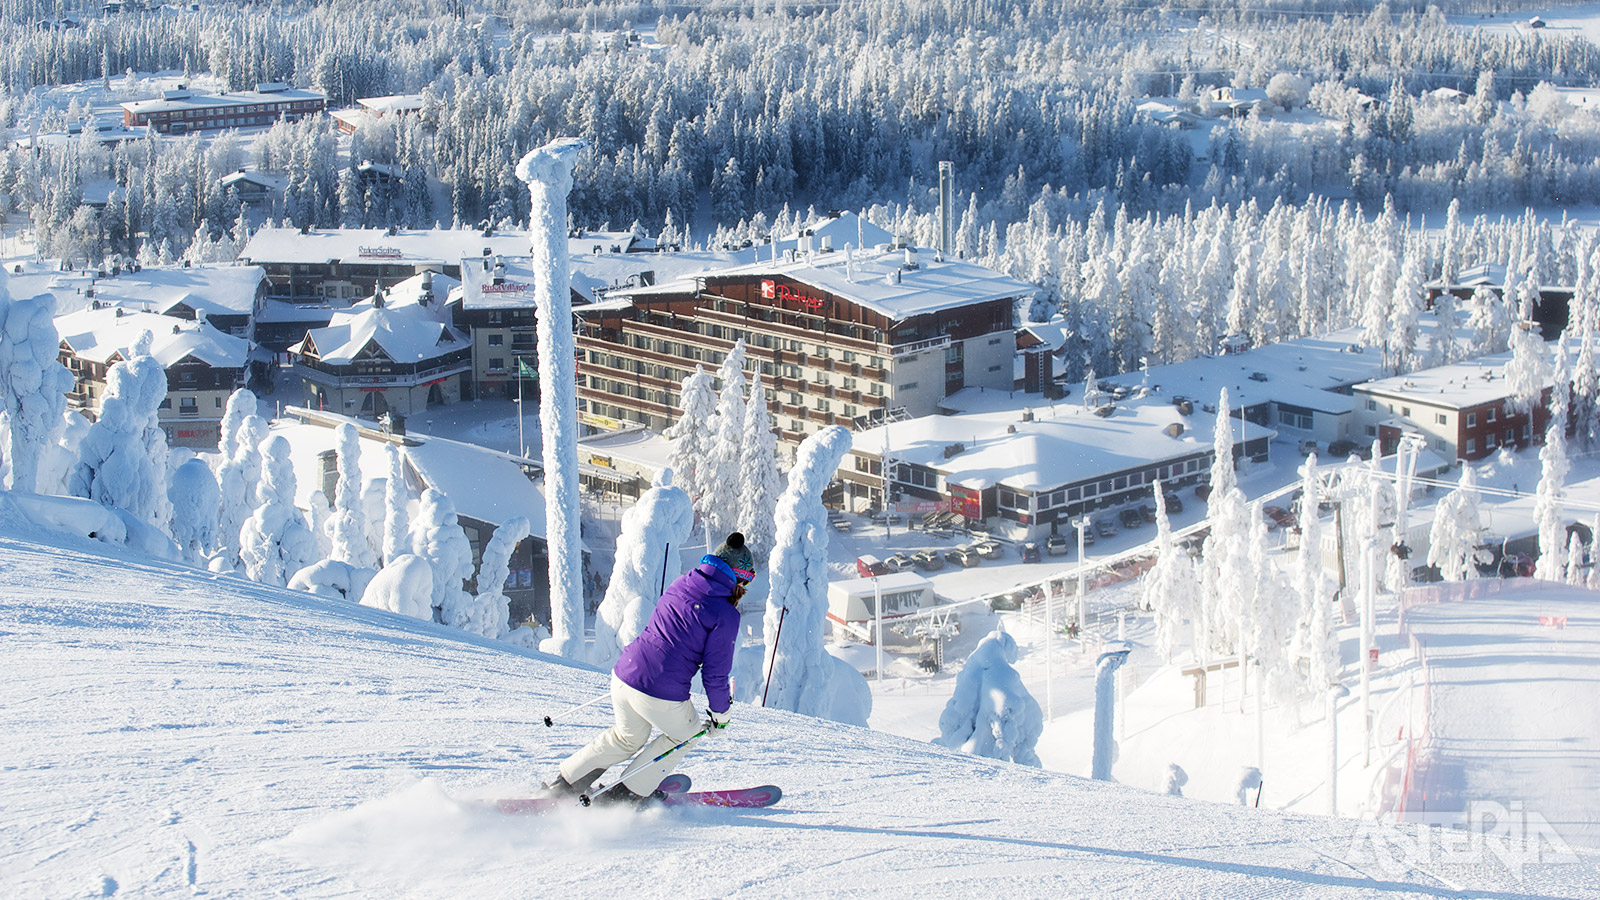 De skiliefhebber kan skiën in Ruka, één van de beste skigebieden van Finland - Facultatief